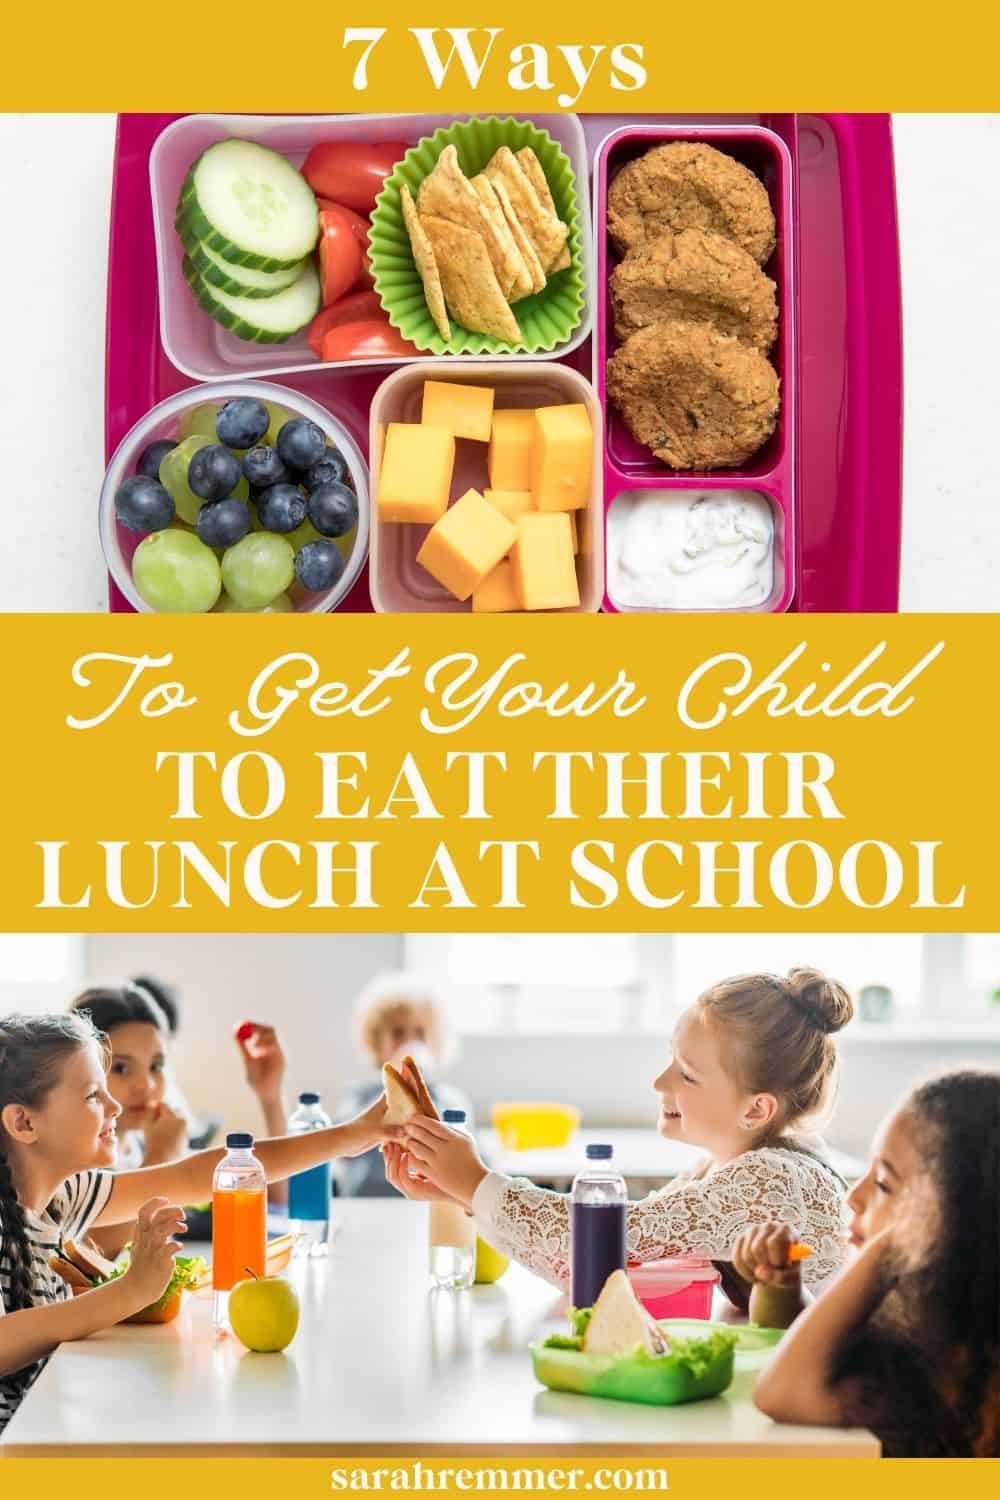 Nachdem ich einen der Posts einer anderen Bloggerin darüber gelesen hatte, wie ihr Vorschulkind sich weigert, ihr Mittagessen zu essen, dachte ich, ich würde es tun "Antwort" indem Sie einen Beitrag mit einigen Ideen schreiben.  Kinder, die sich weigern, ihr Mittagessen zu essen, sind ein häufiges Problem, mit dem viele Eltern konfrontiert sind. Hier sind 7 Möglichkeiten, wie Sie Ihr Kind dazu bringen können, sein Mittagessen in der Schule zu essen!